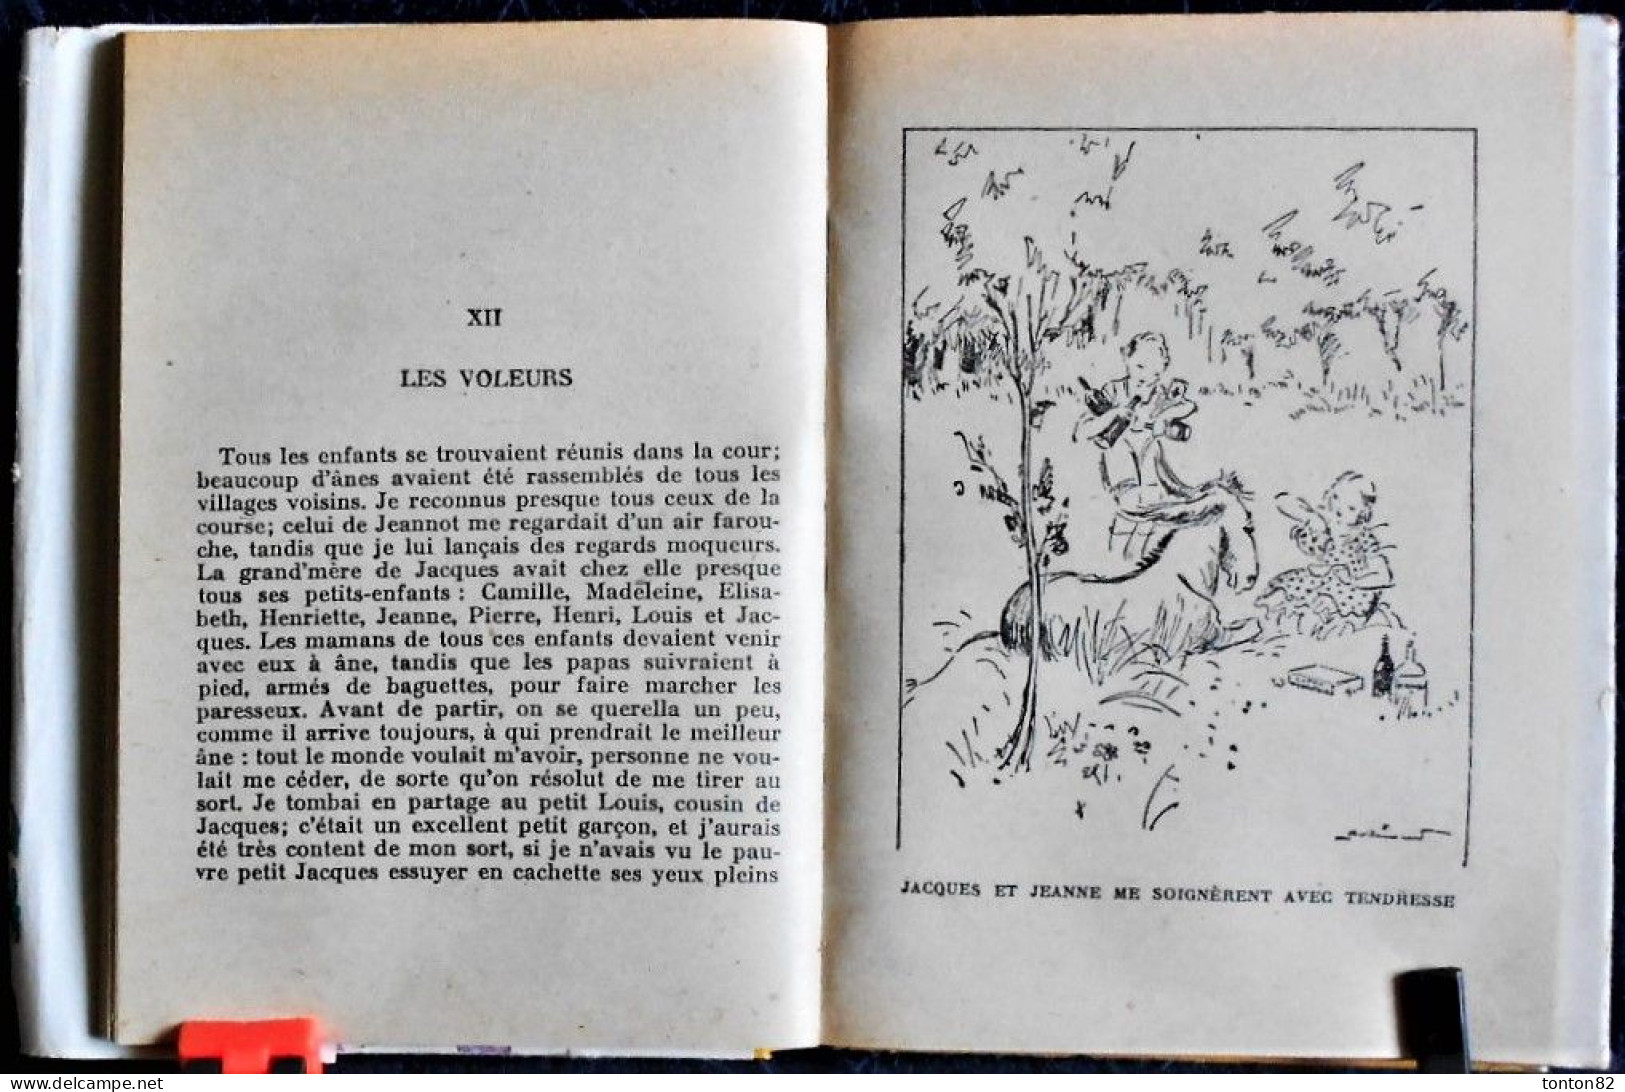 La Comtesse de Ségur - Les mémoires d'un âne - Librairie Hachette / Bibliothèque Rose - ( 1957 ) - Avec sa jaquette .